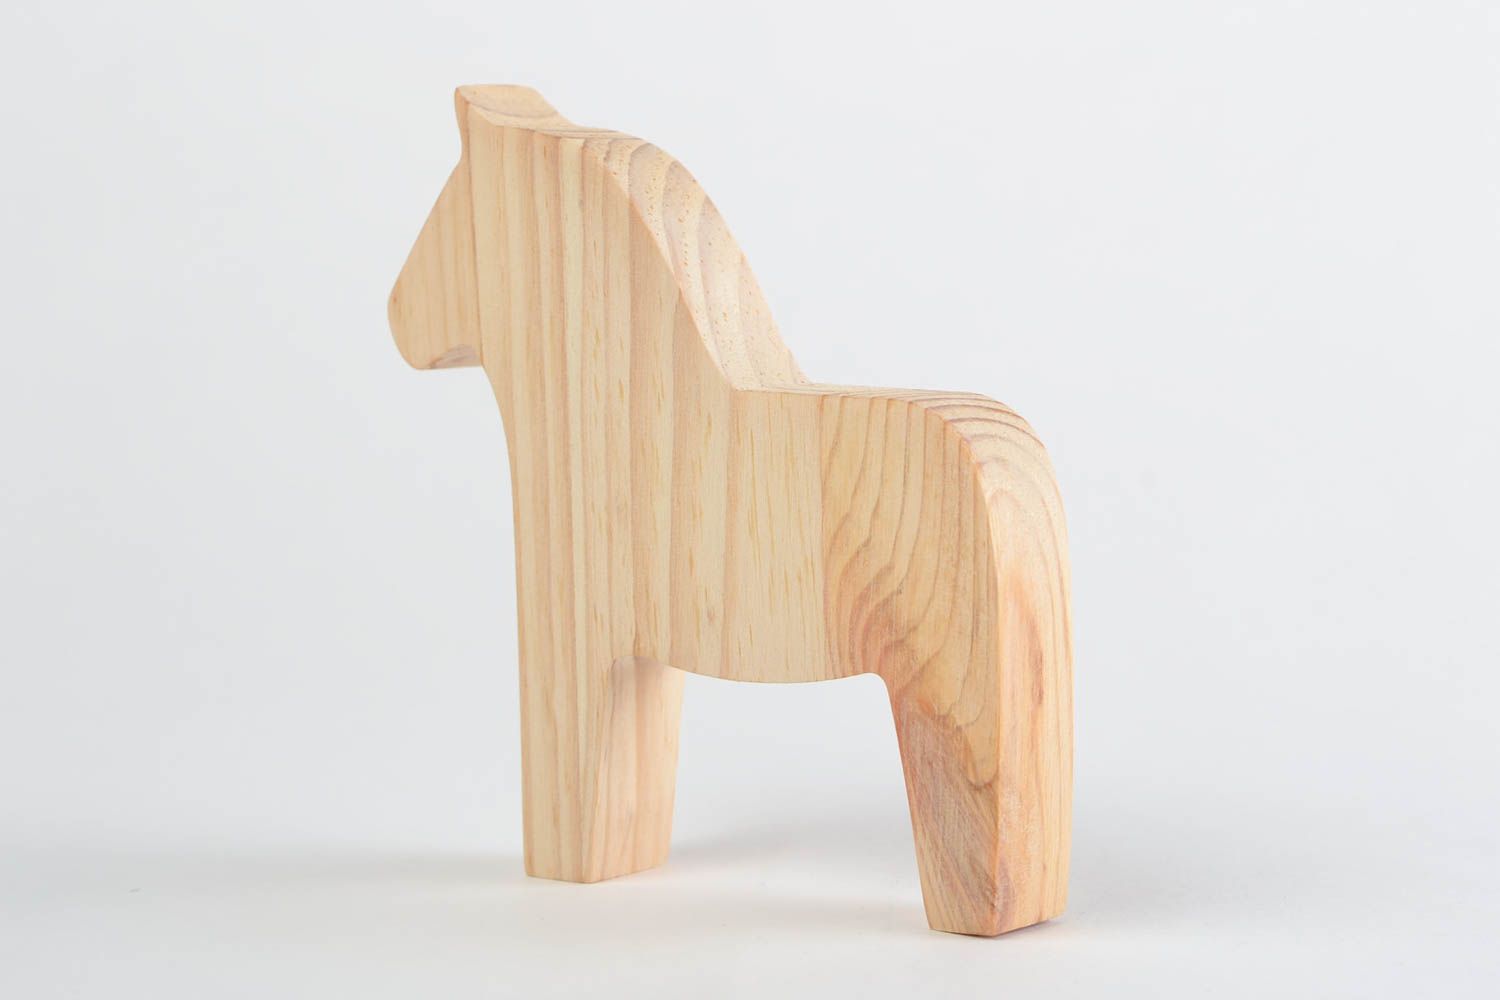 Игрушка из дерева ручной работы лошадка светлая маленького размера для детей фото 5